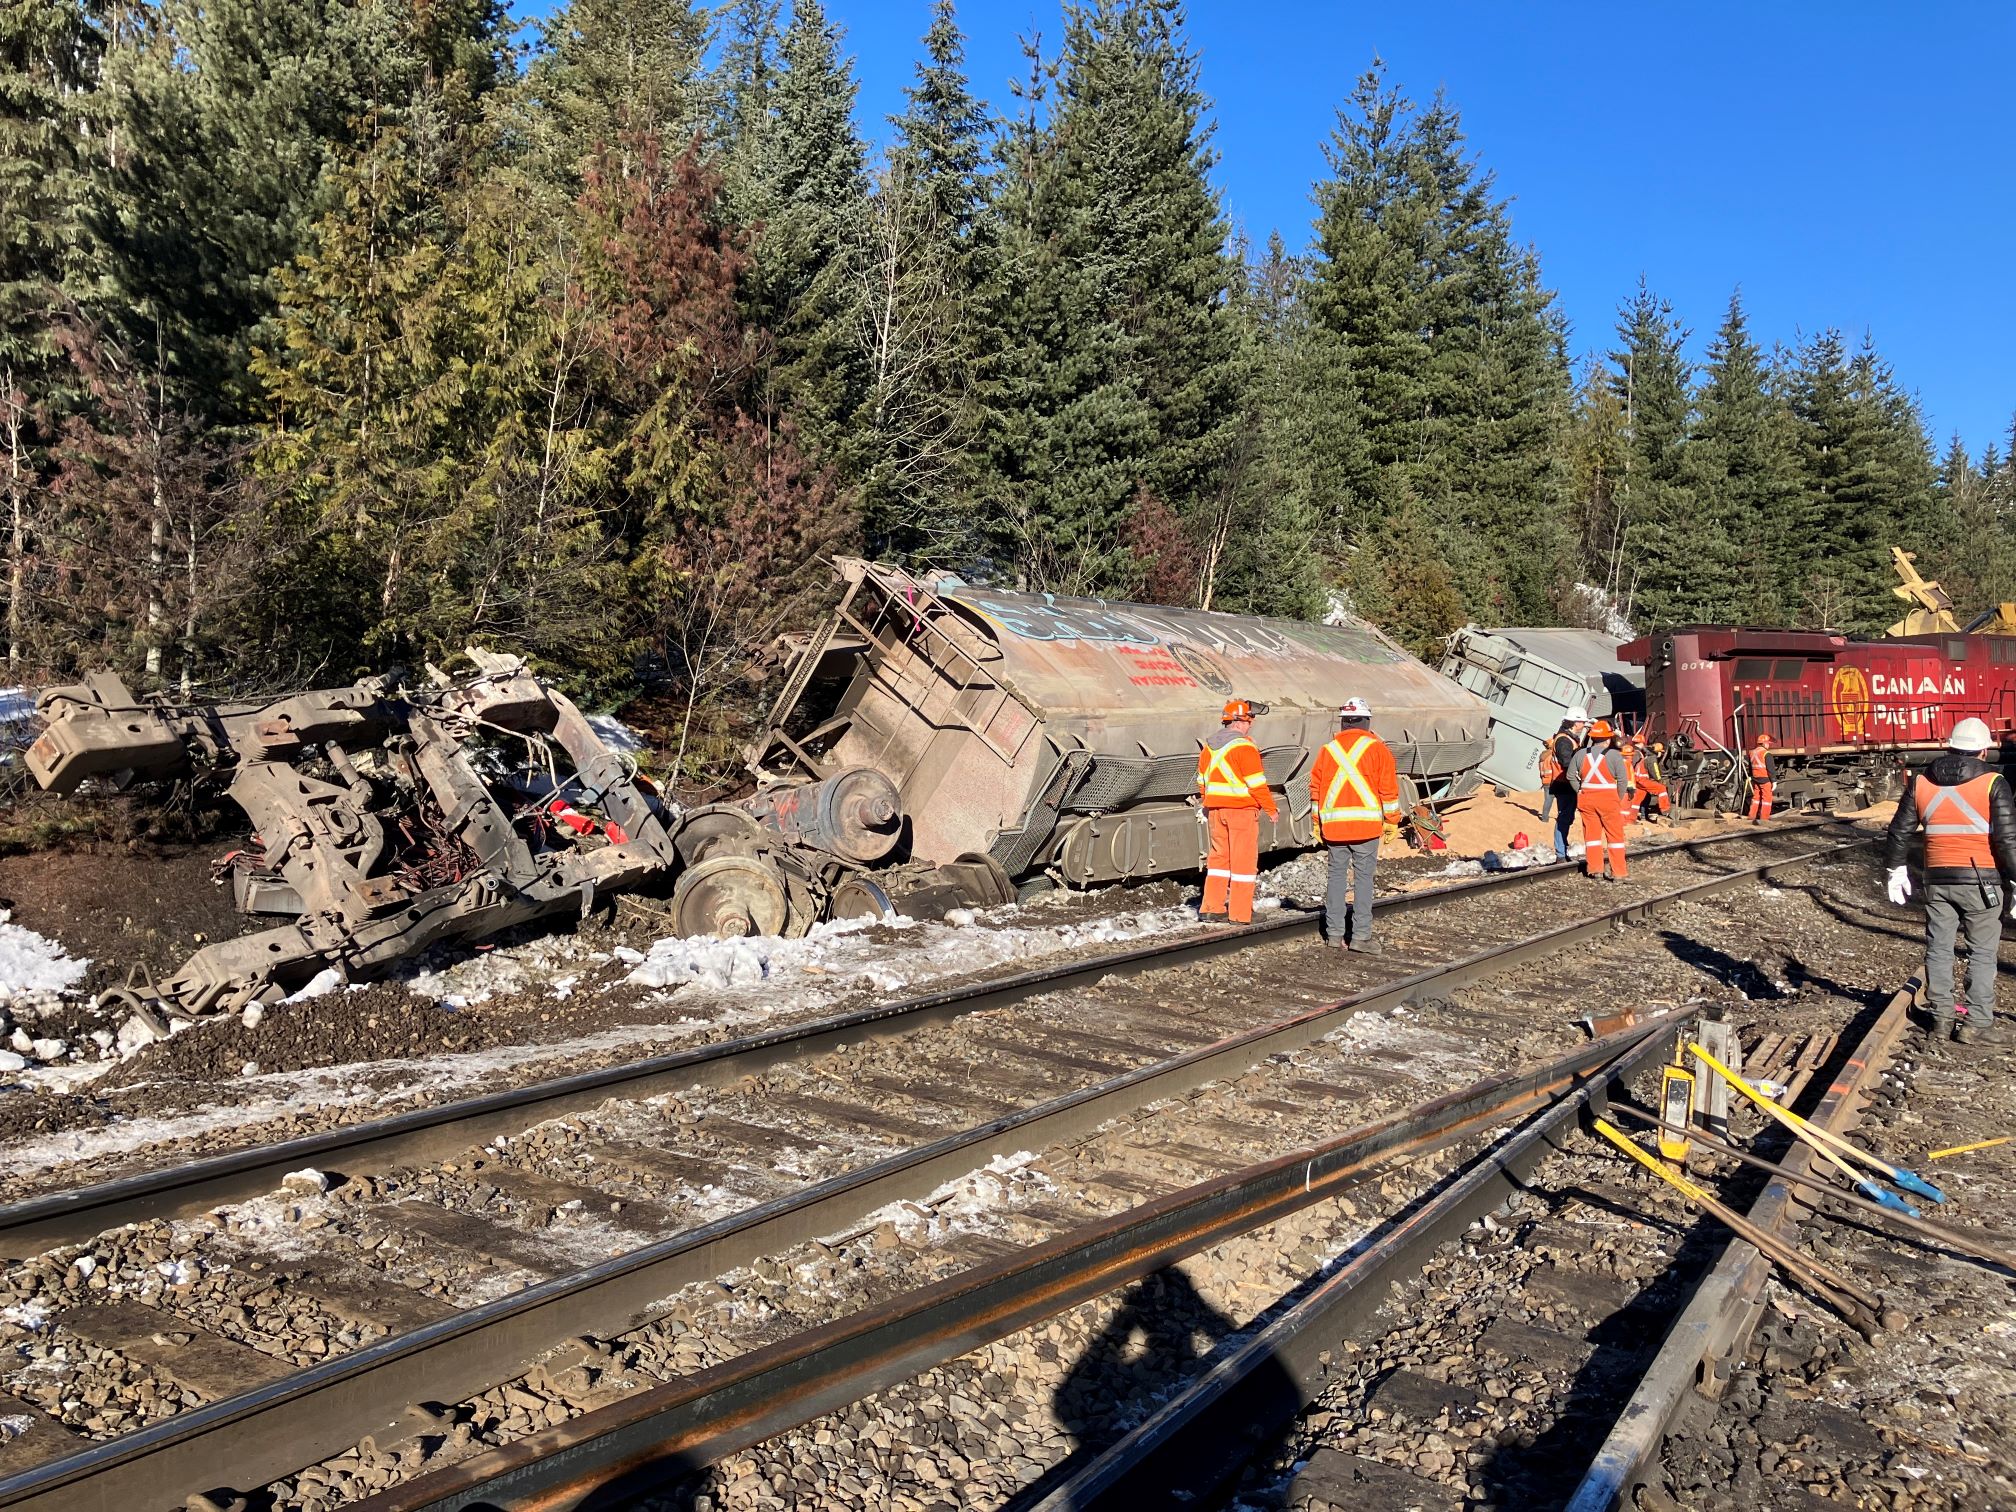 A train derailment outside of Revelstoke, BC